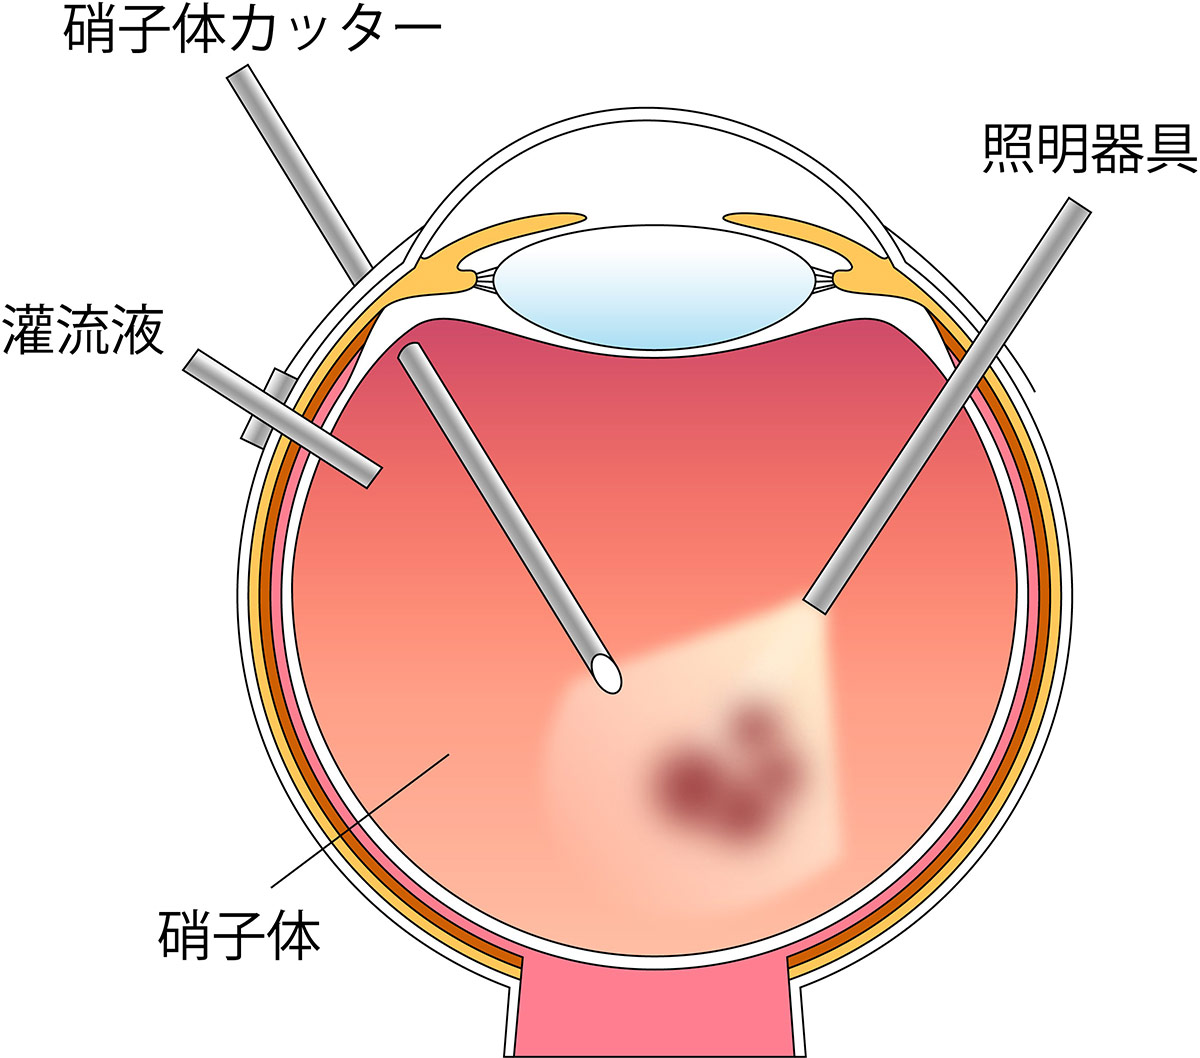 （図5）硝子体手術のイラスト